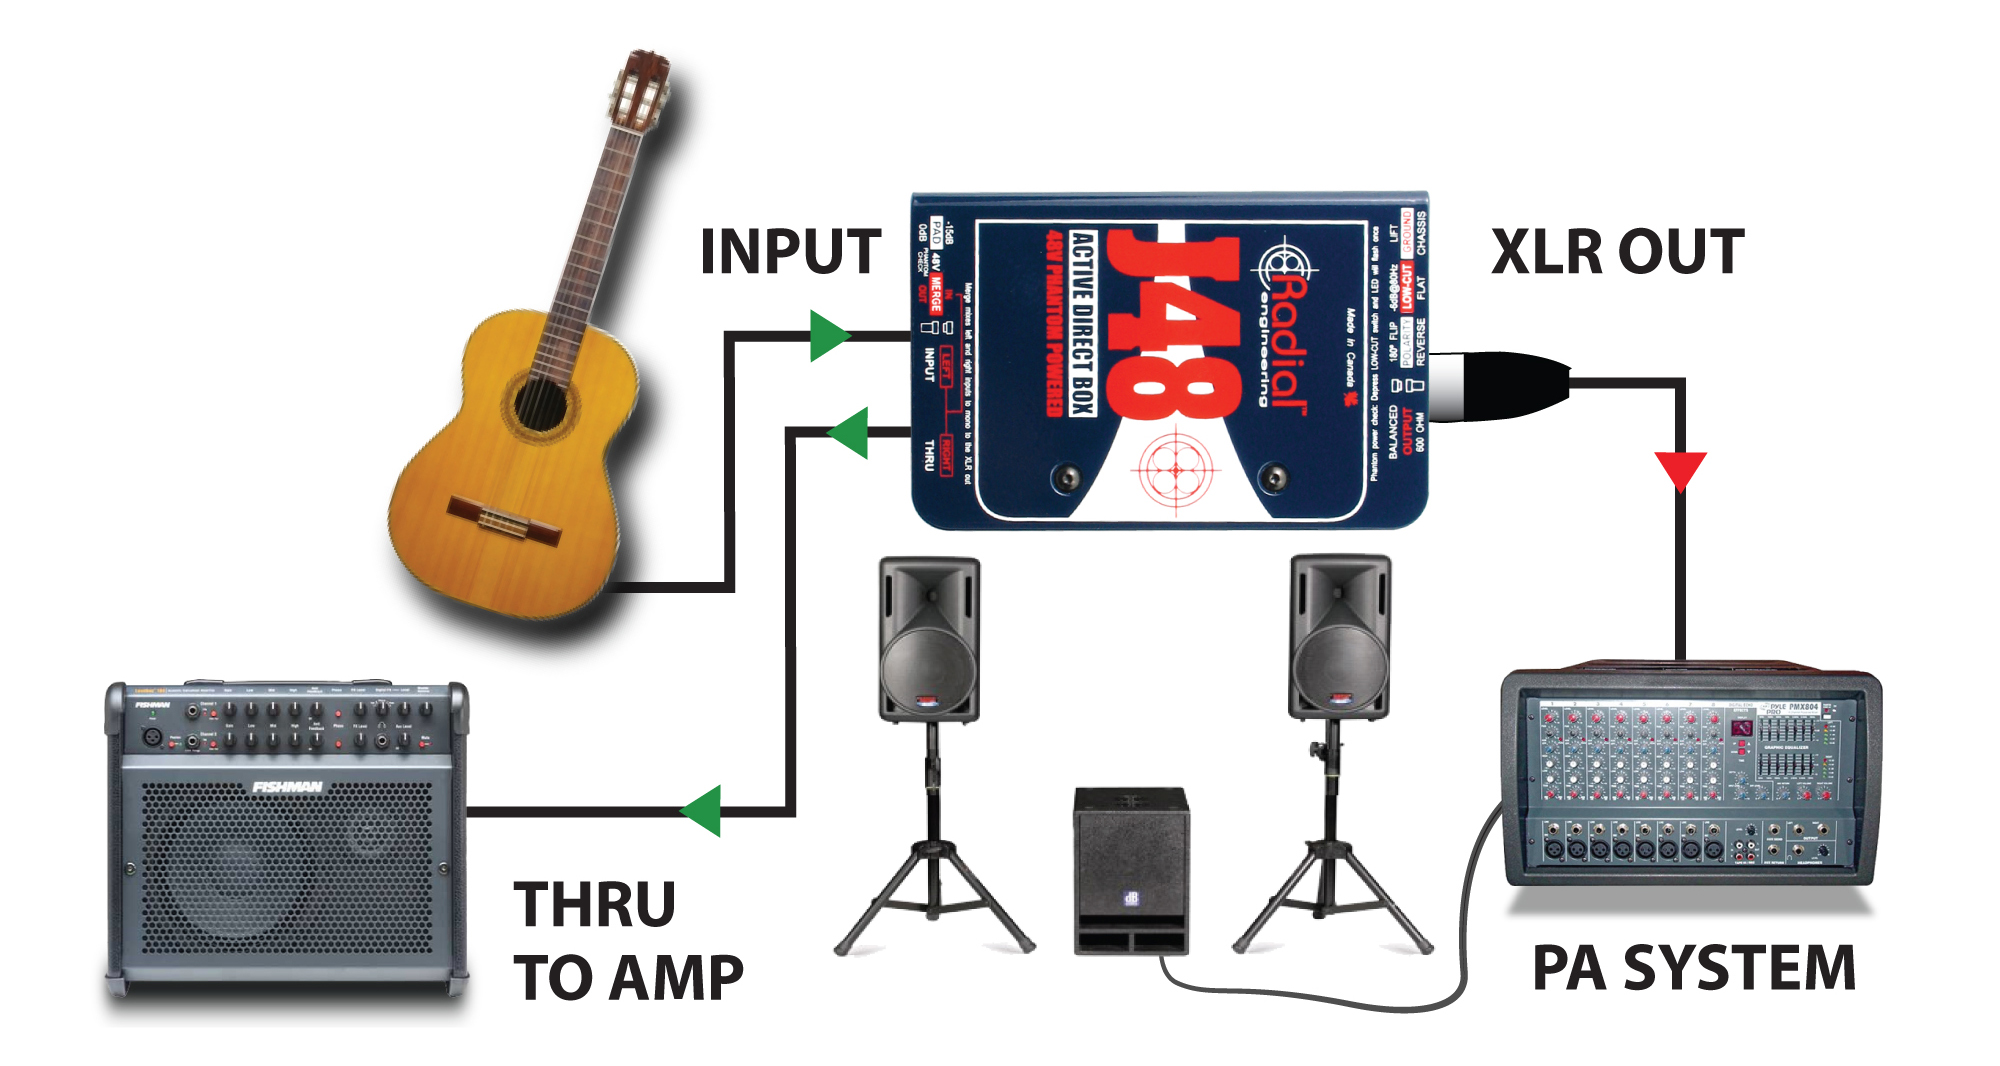 Su grandi palchi professionali per concerti, i monitor o il suono sul palco sono controllati solitamente da un tecnico monitor o dal tecnico front-of-house (FOH). In questo caso, J48 è sostanzialmente invisibile: la chitarra si collega a J48 ed il resto viene gestito come un microfono